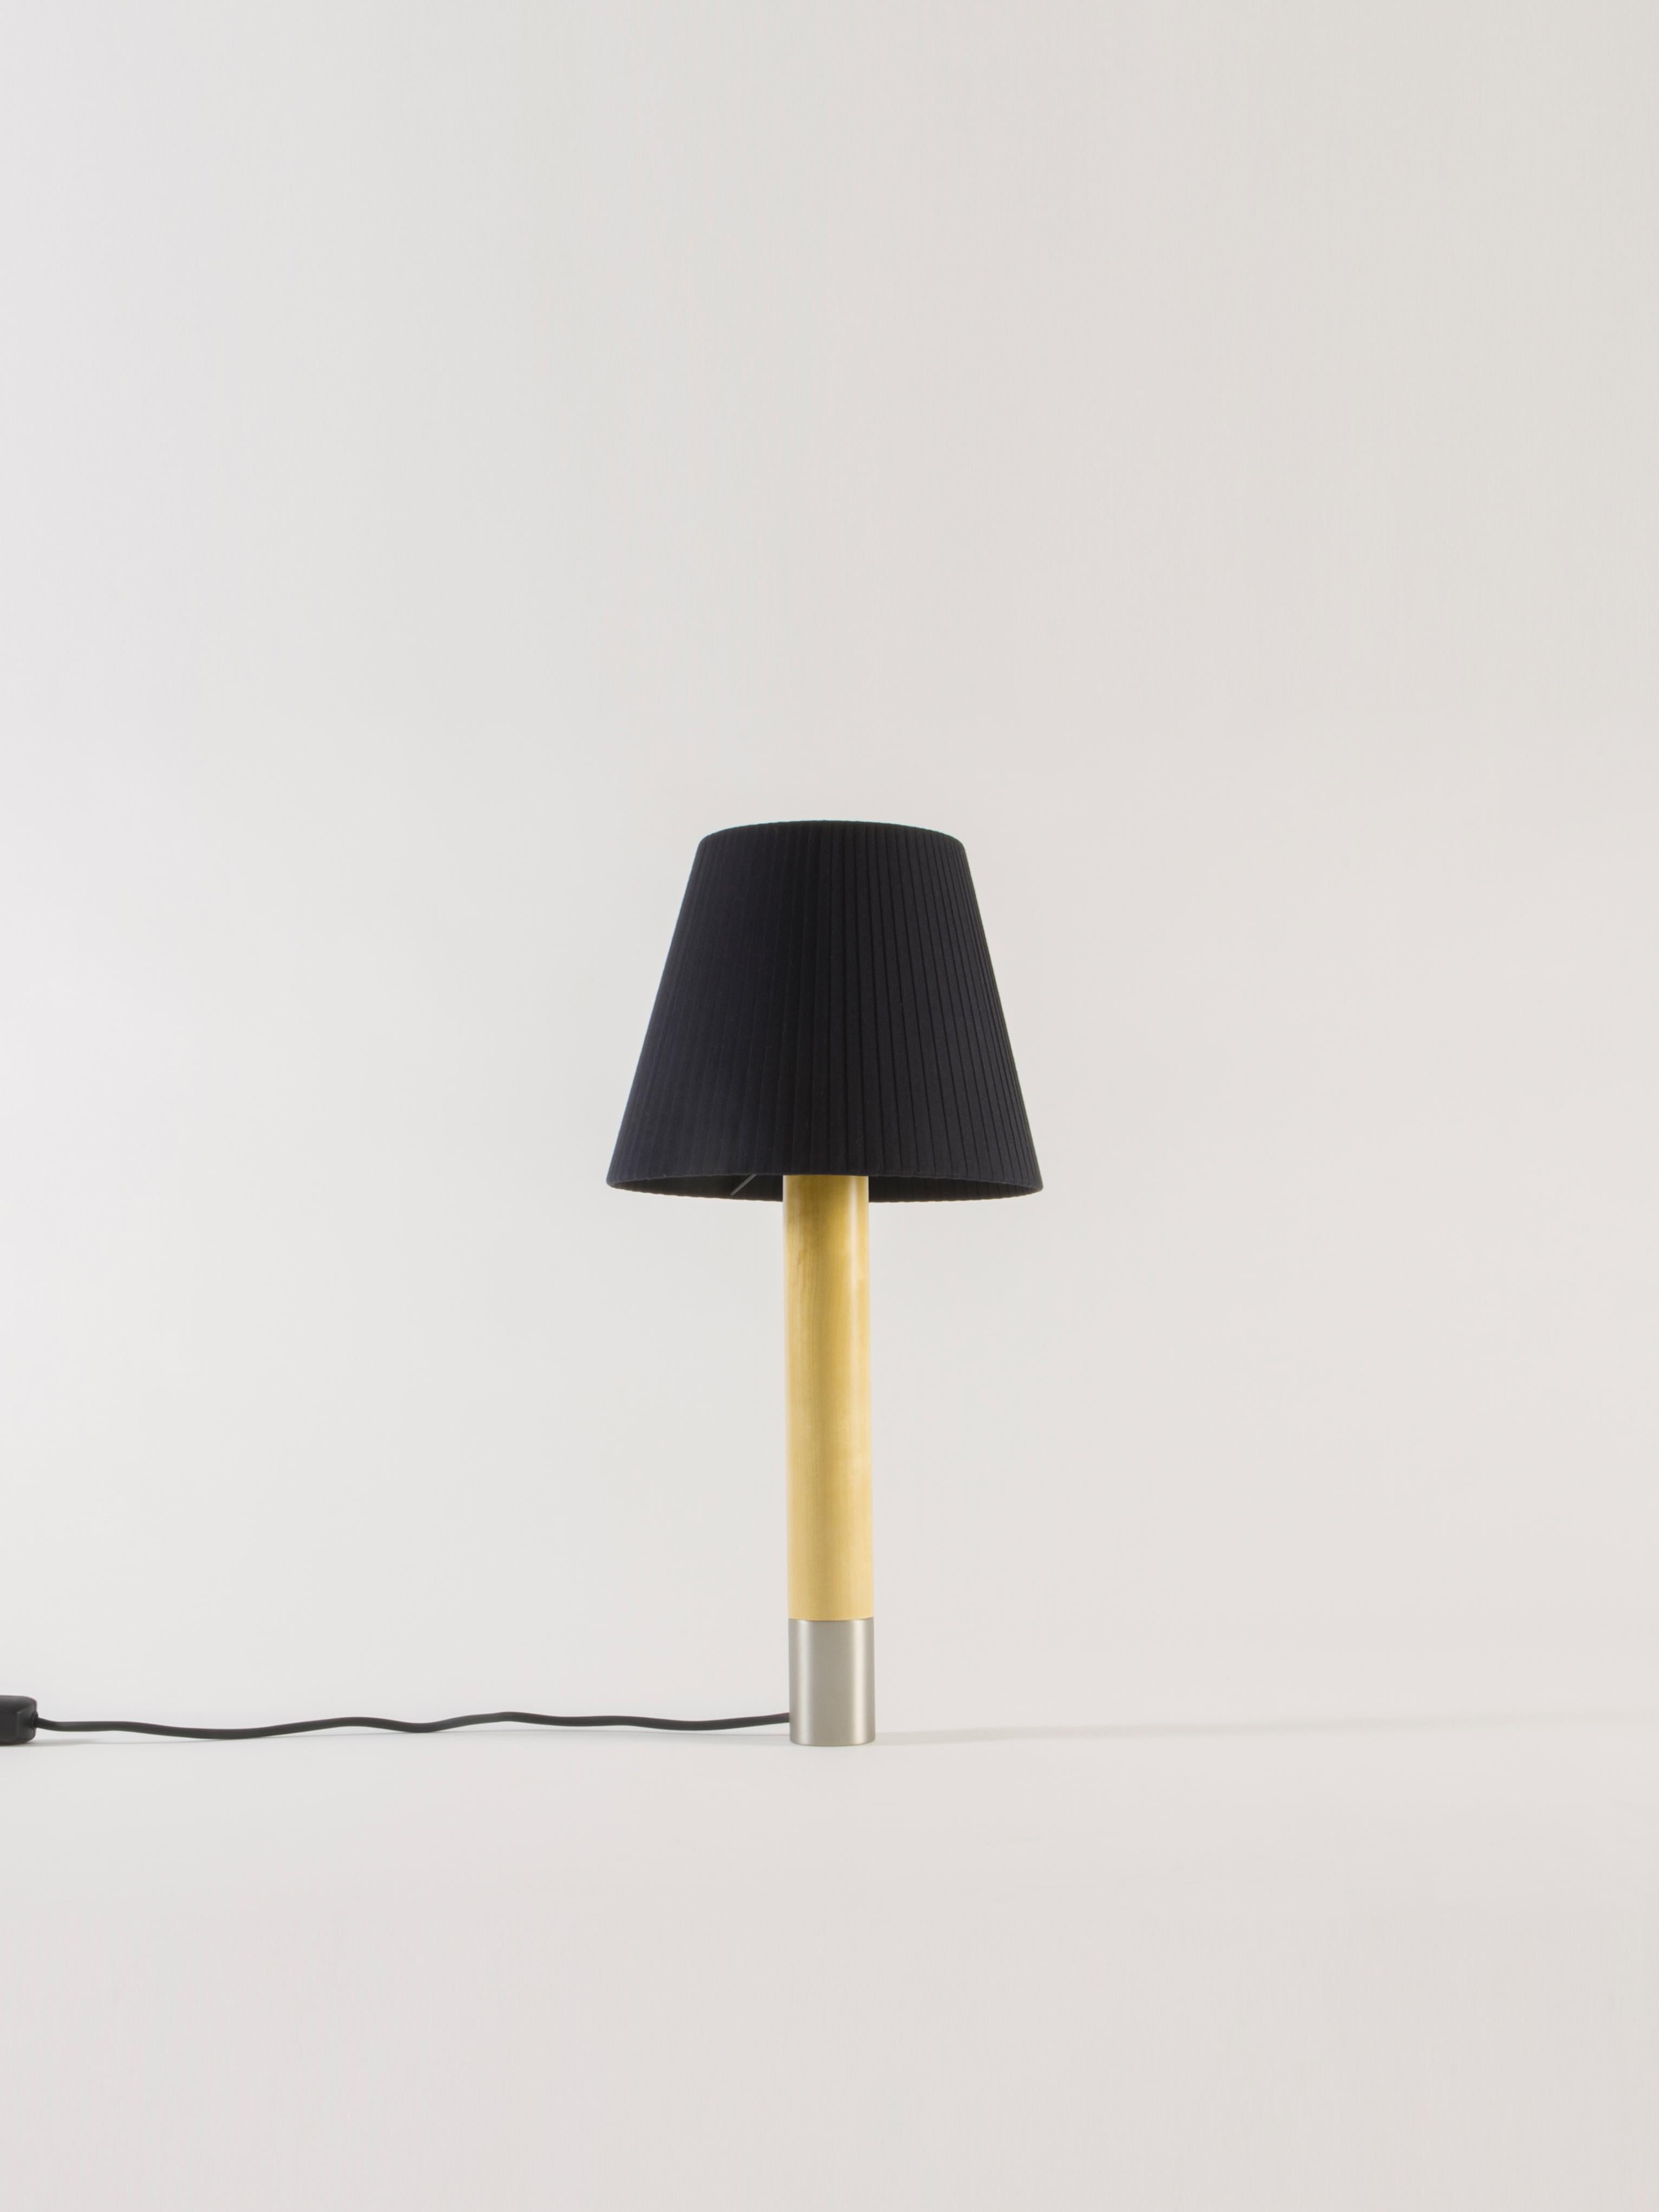 Contemporary Nickel and Black Básica M1 Table Lamp by Santiago Roqueta, Santa & Cole For Sale